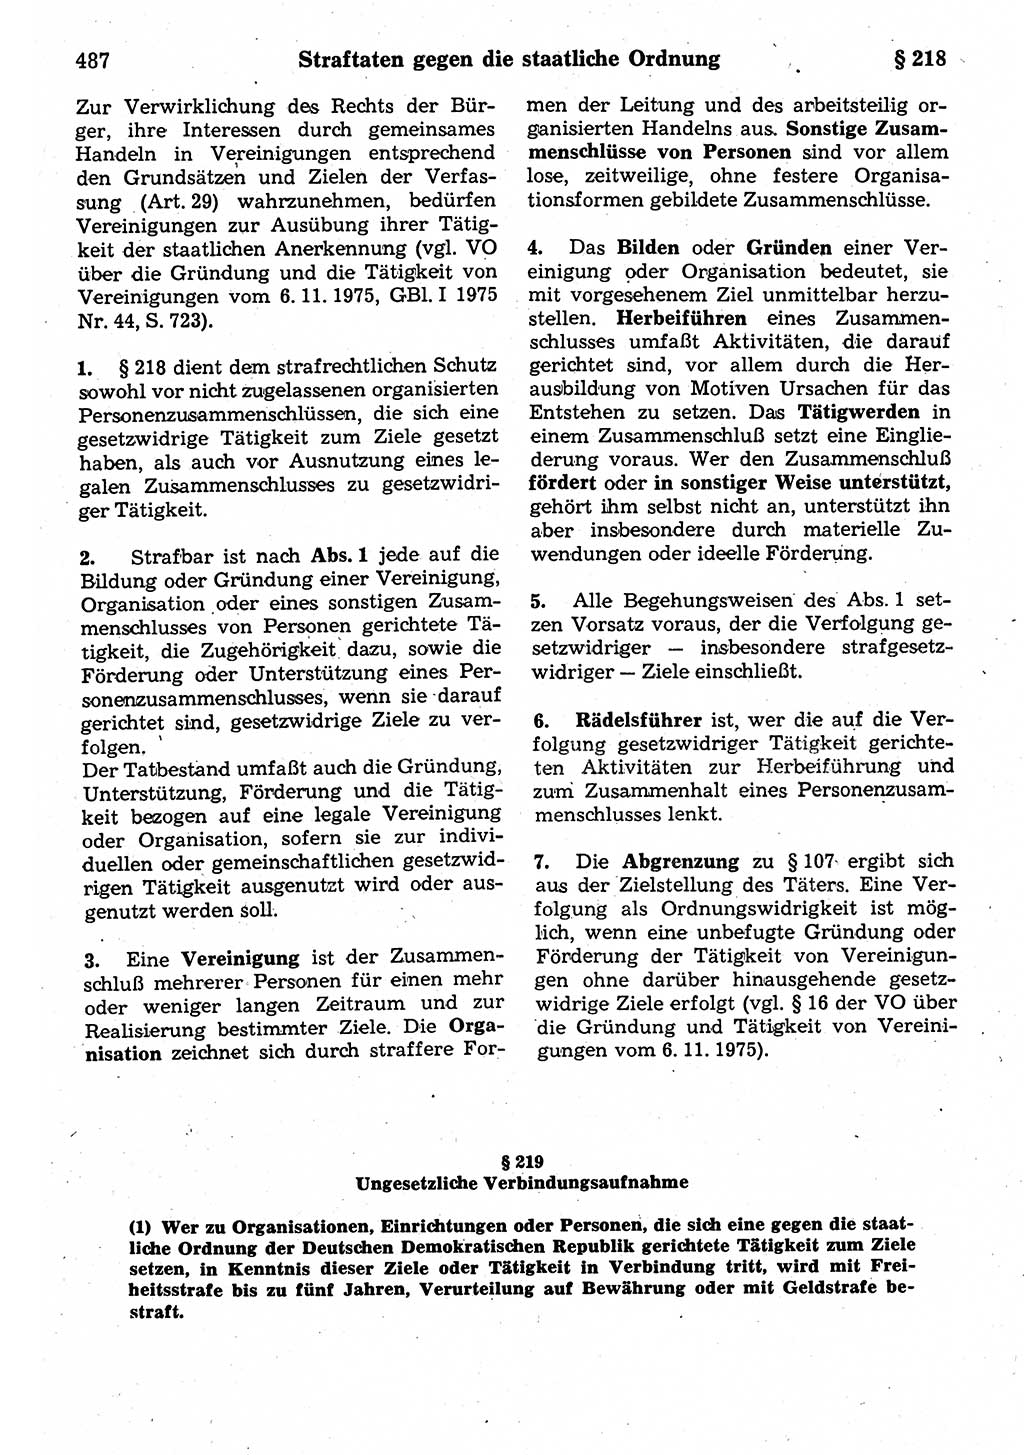 Strafrecht der Deutschen Demokratischen Republik (DDR), Kommentar zum Strafgesetzbuch (StGB) 1987, Seite 487 (Strafr. DDR Komm. StGB 1987, S. 487)